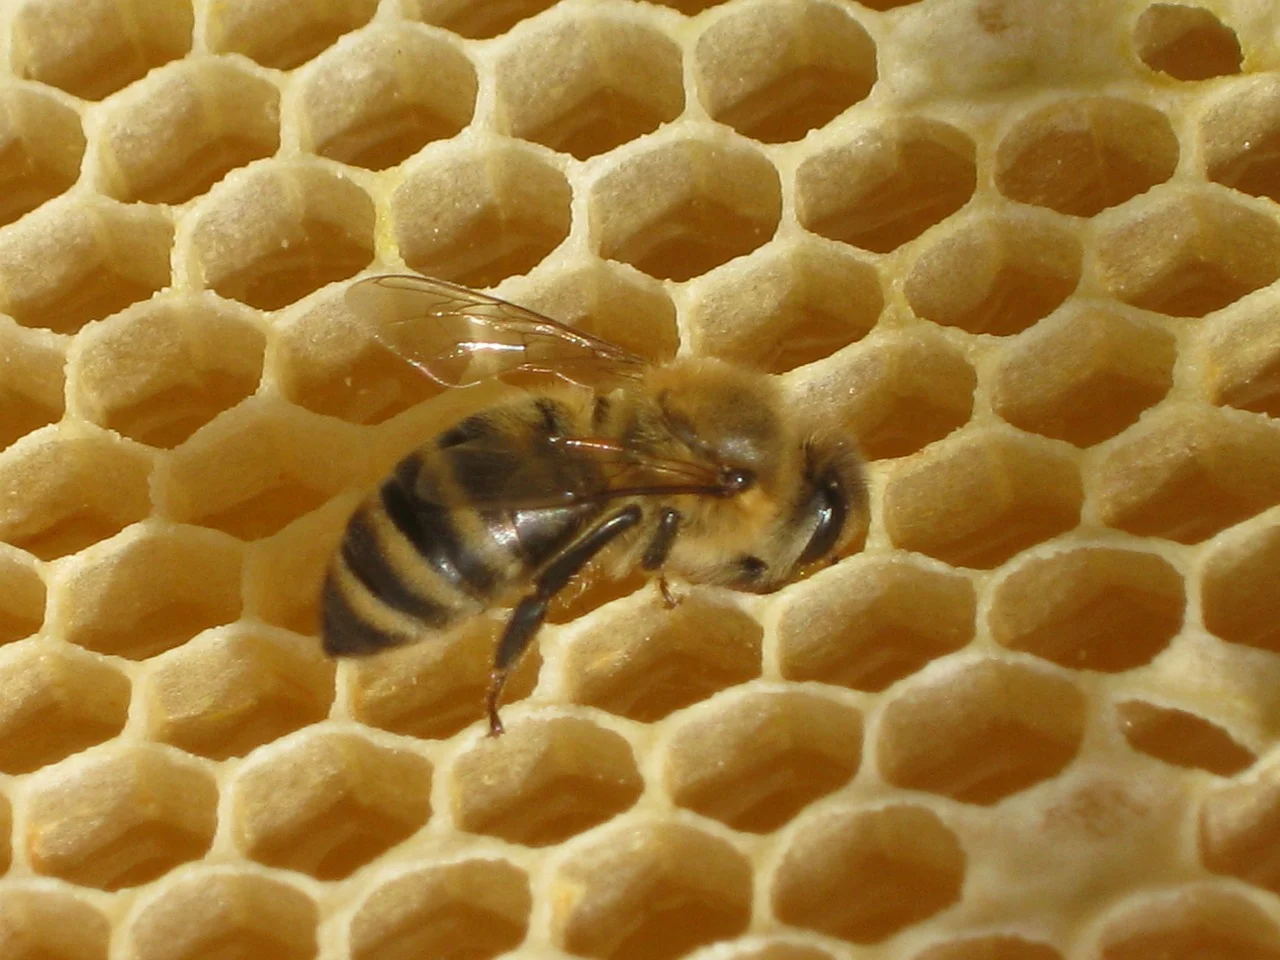 Favos de cera de abelha, inspiração para o exame, e uma abelha trabalhando nos favos.